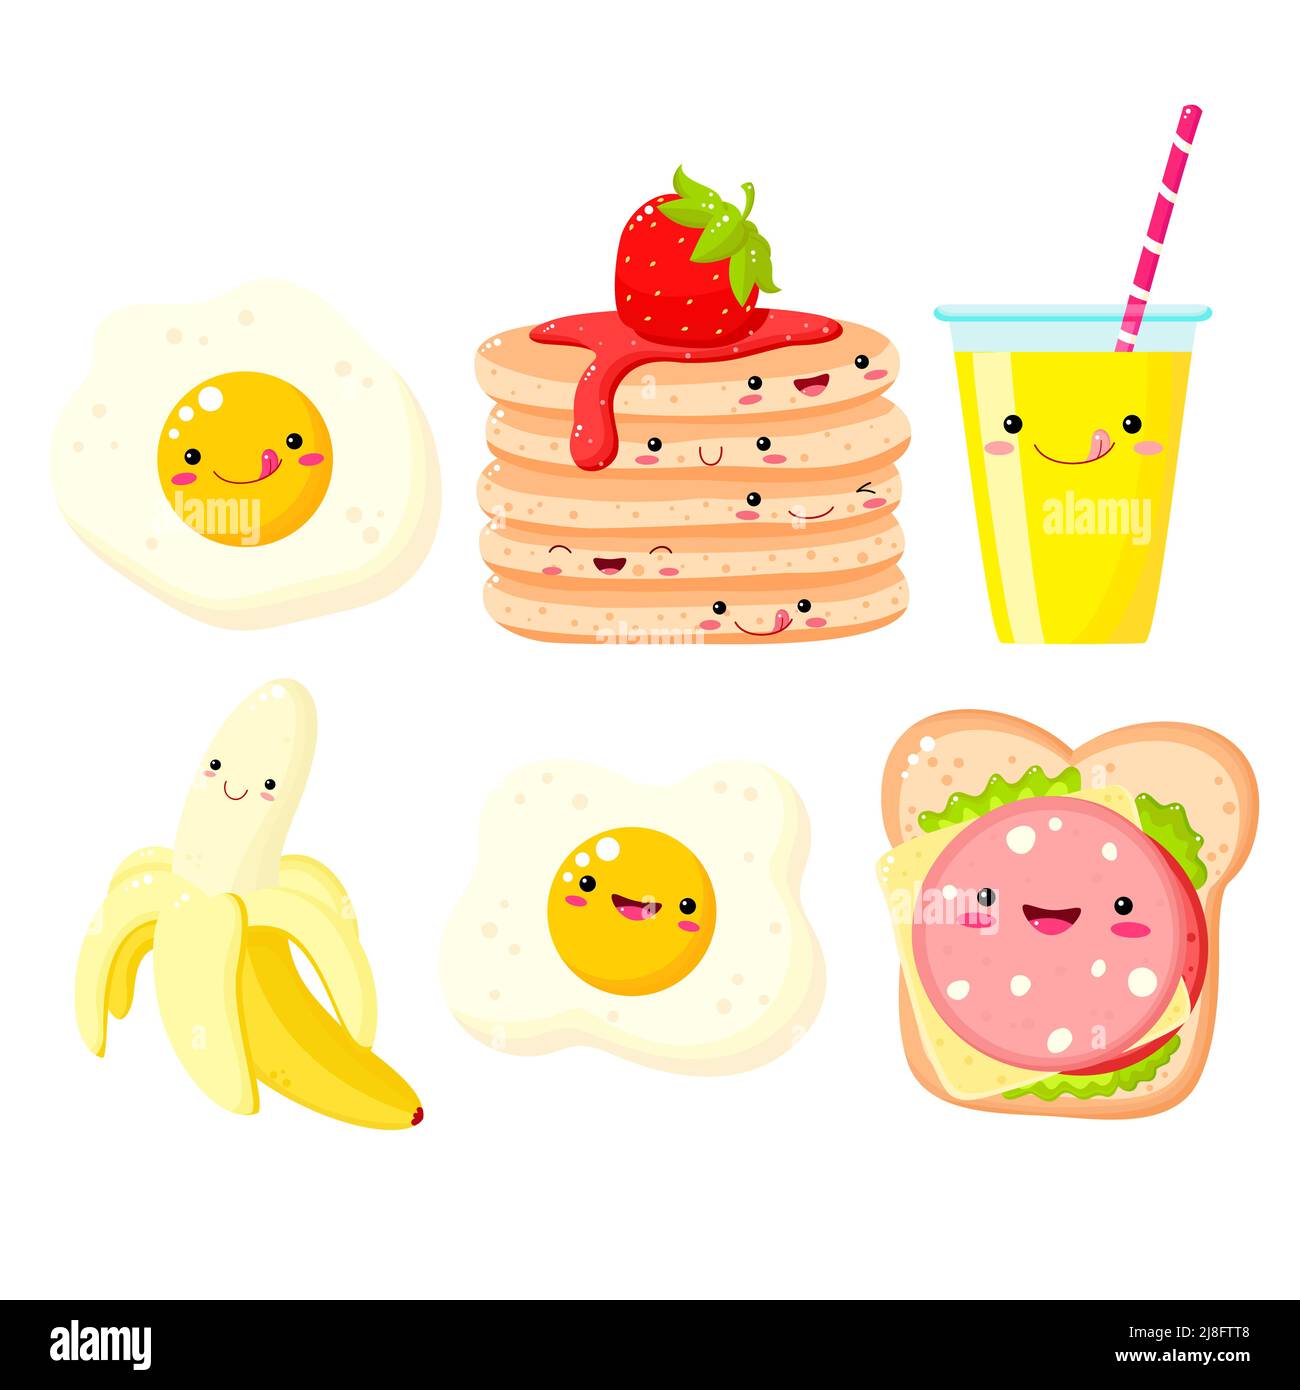 Heure du petit déjeuner. Ensemble de jolis symboles culinaires dans le style kawaii pour un joli motif. Banane, jus d'orange, crêpes, sandwich au fromage et aux légumes, œufs brouillés Illustration de Vecteur